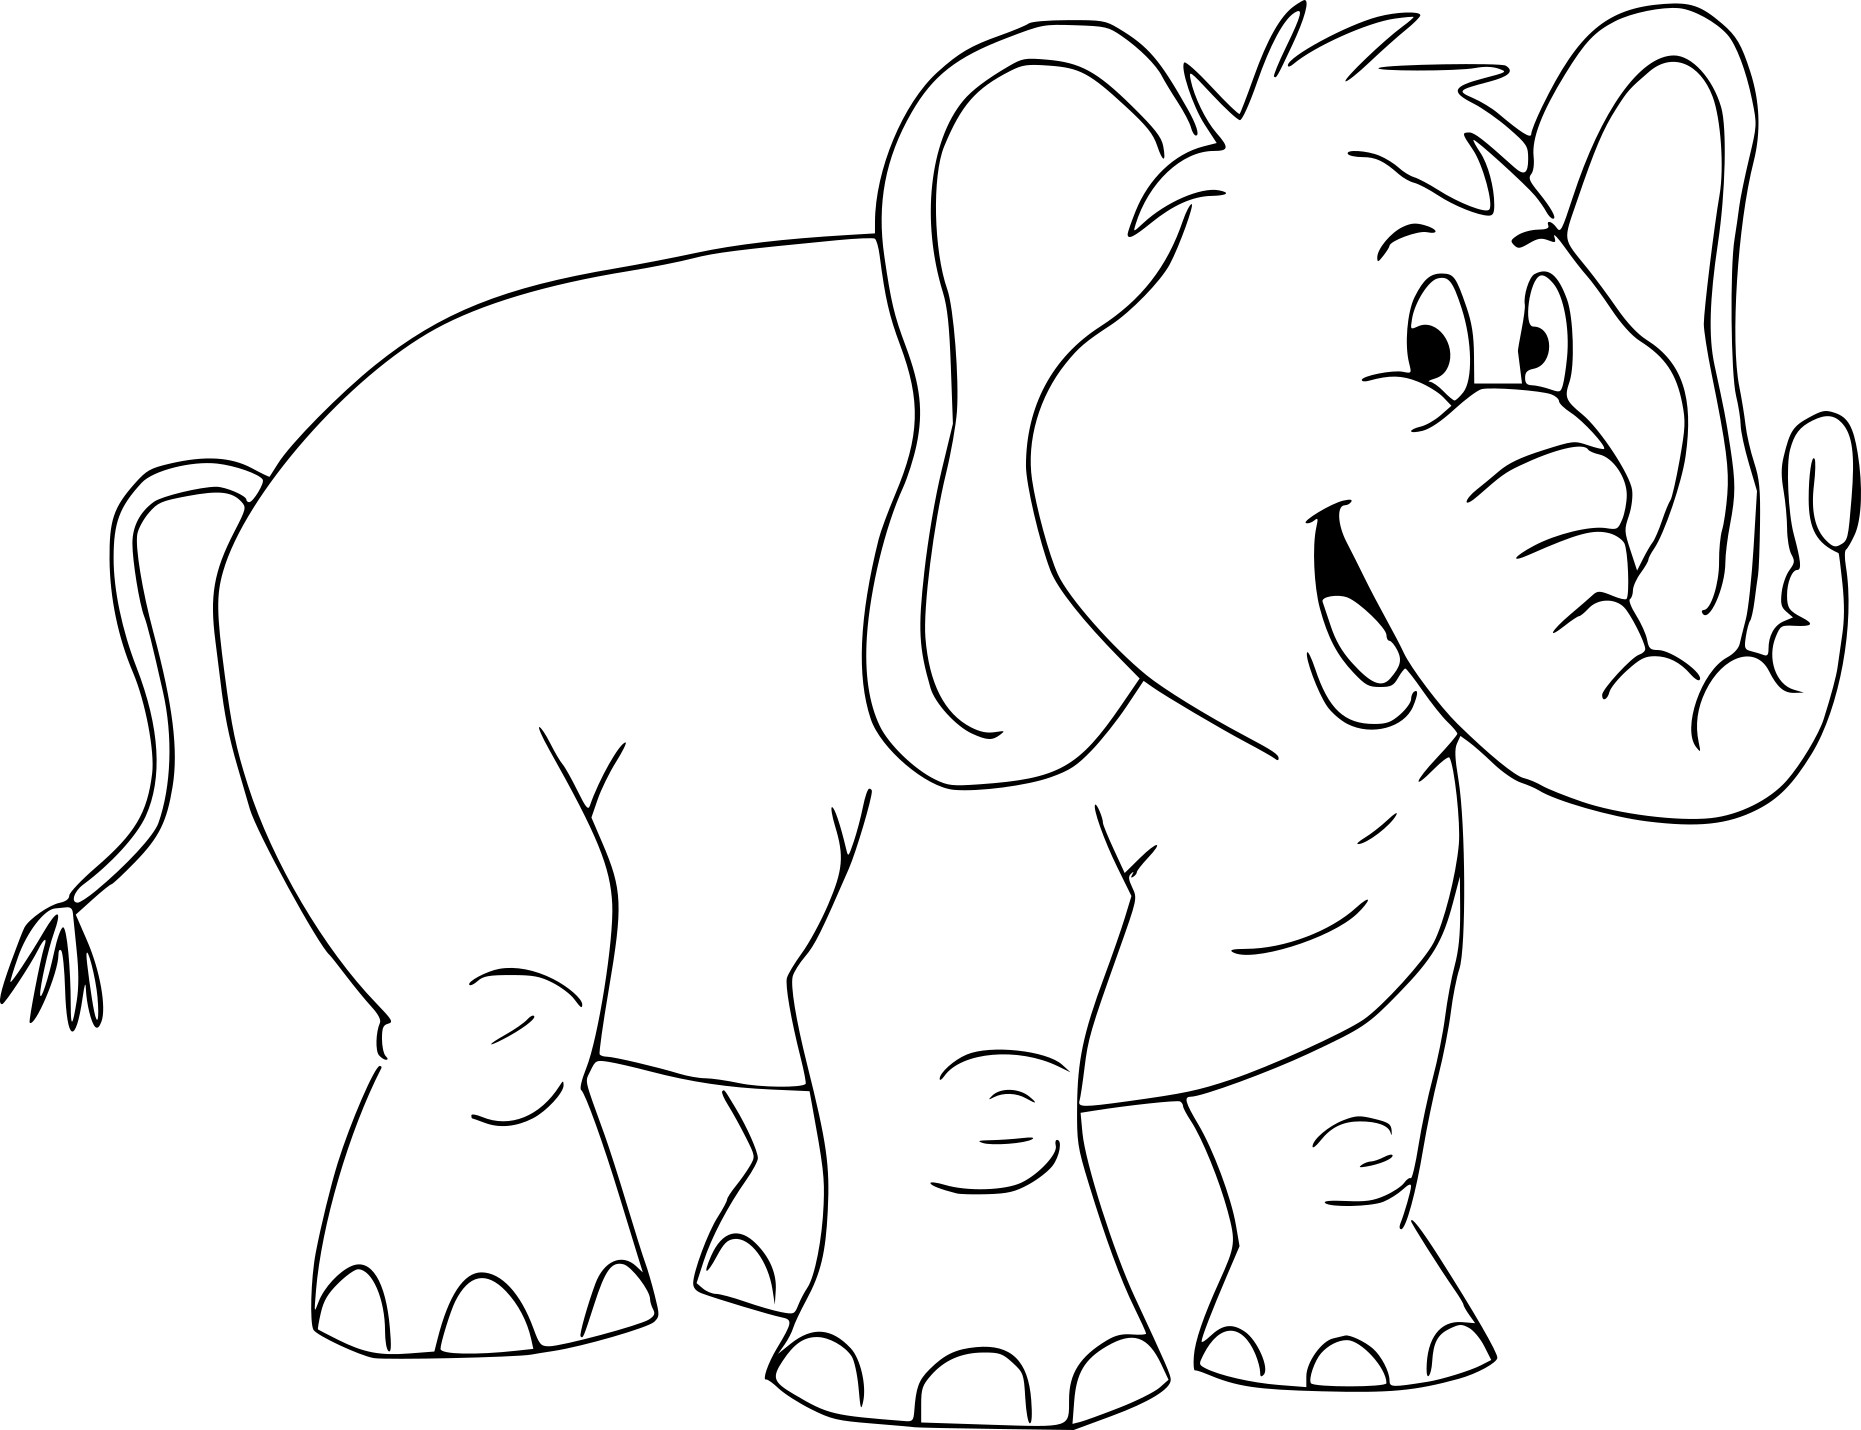 Tranh tô màu hình voi cartoon rất đẹp